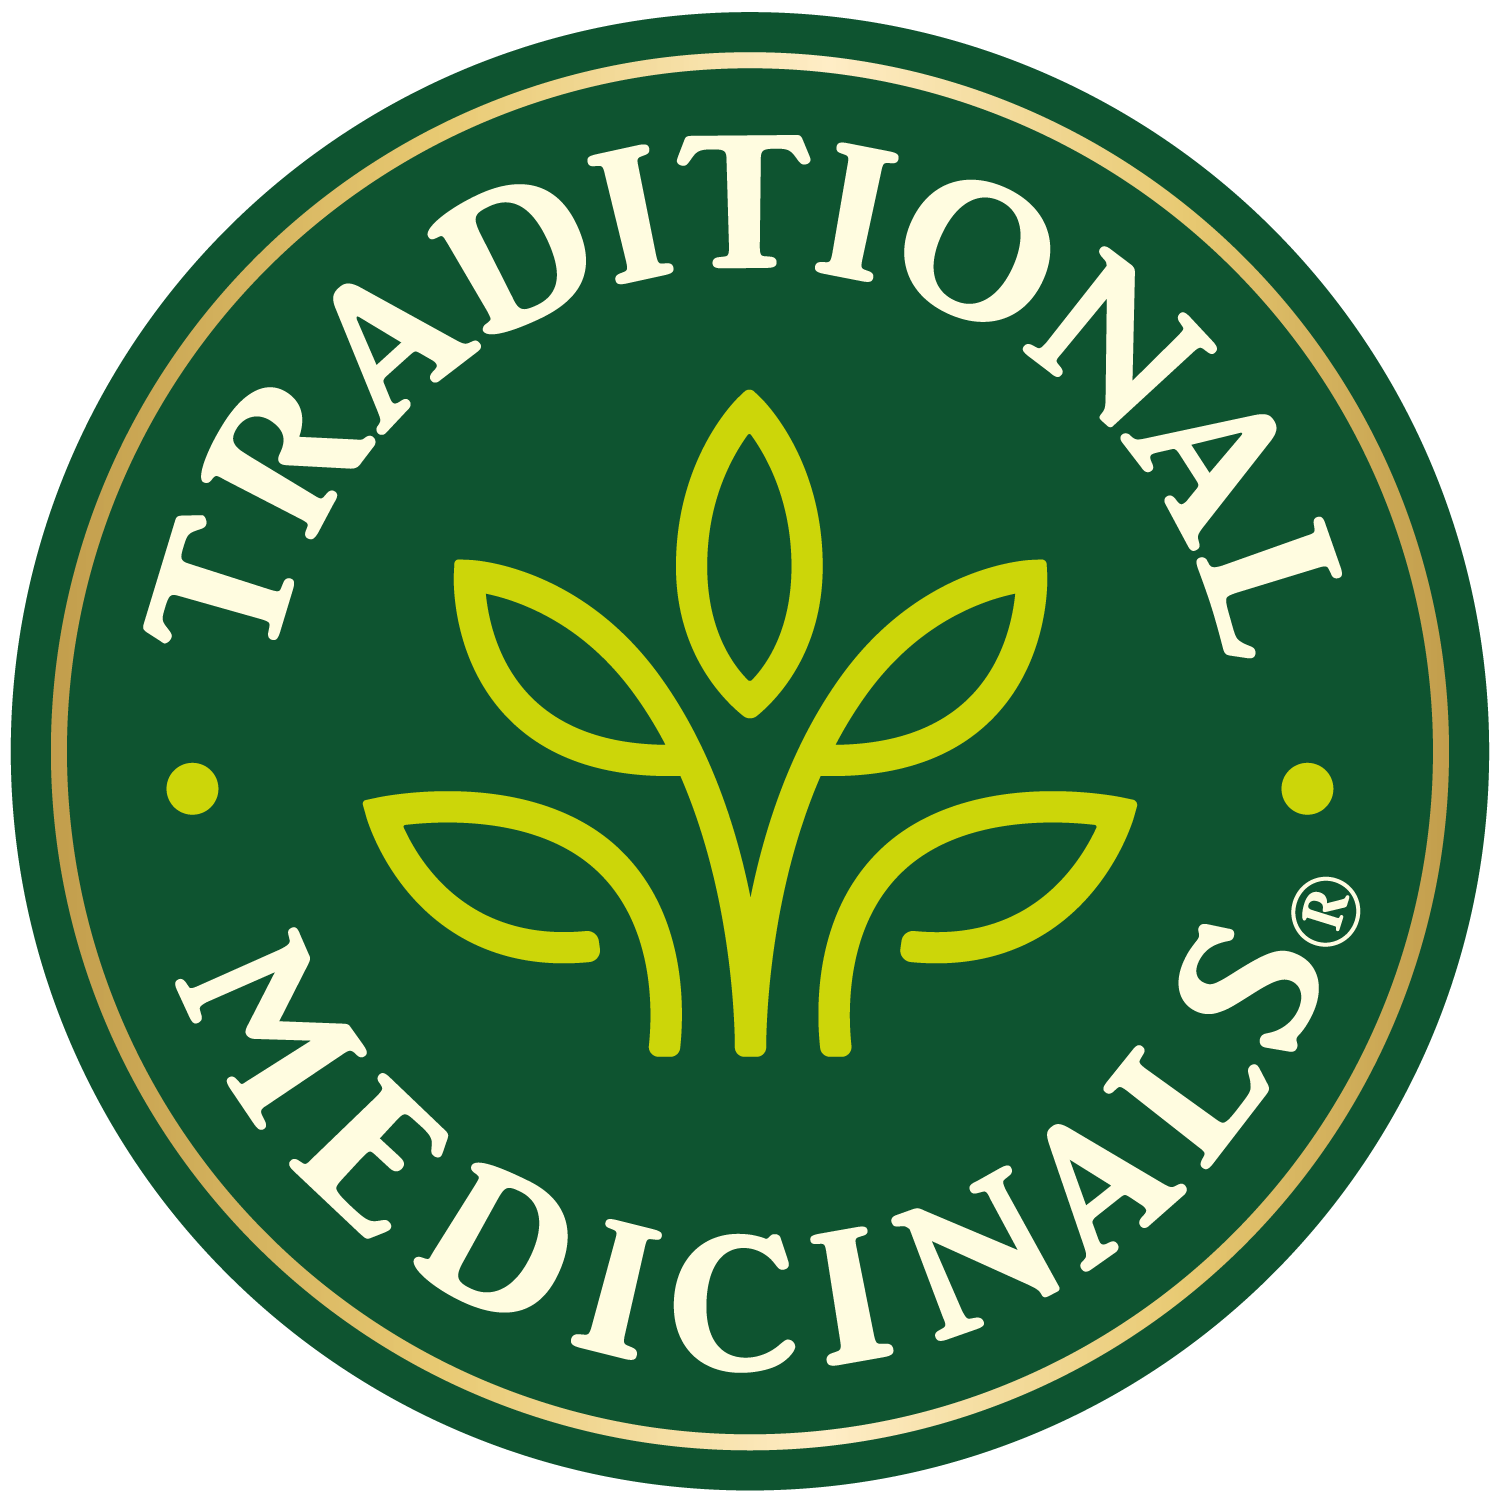 Traditional Medicinals - All Naturals Organic Herbals and Medicinal Teas